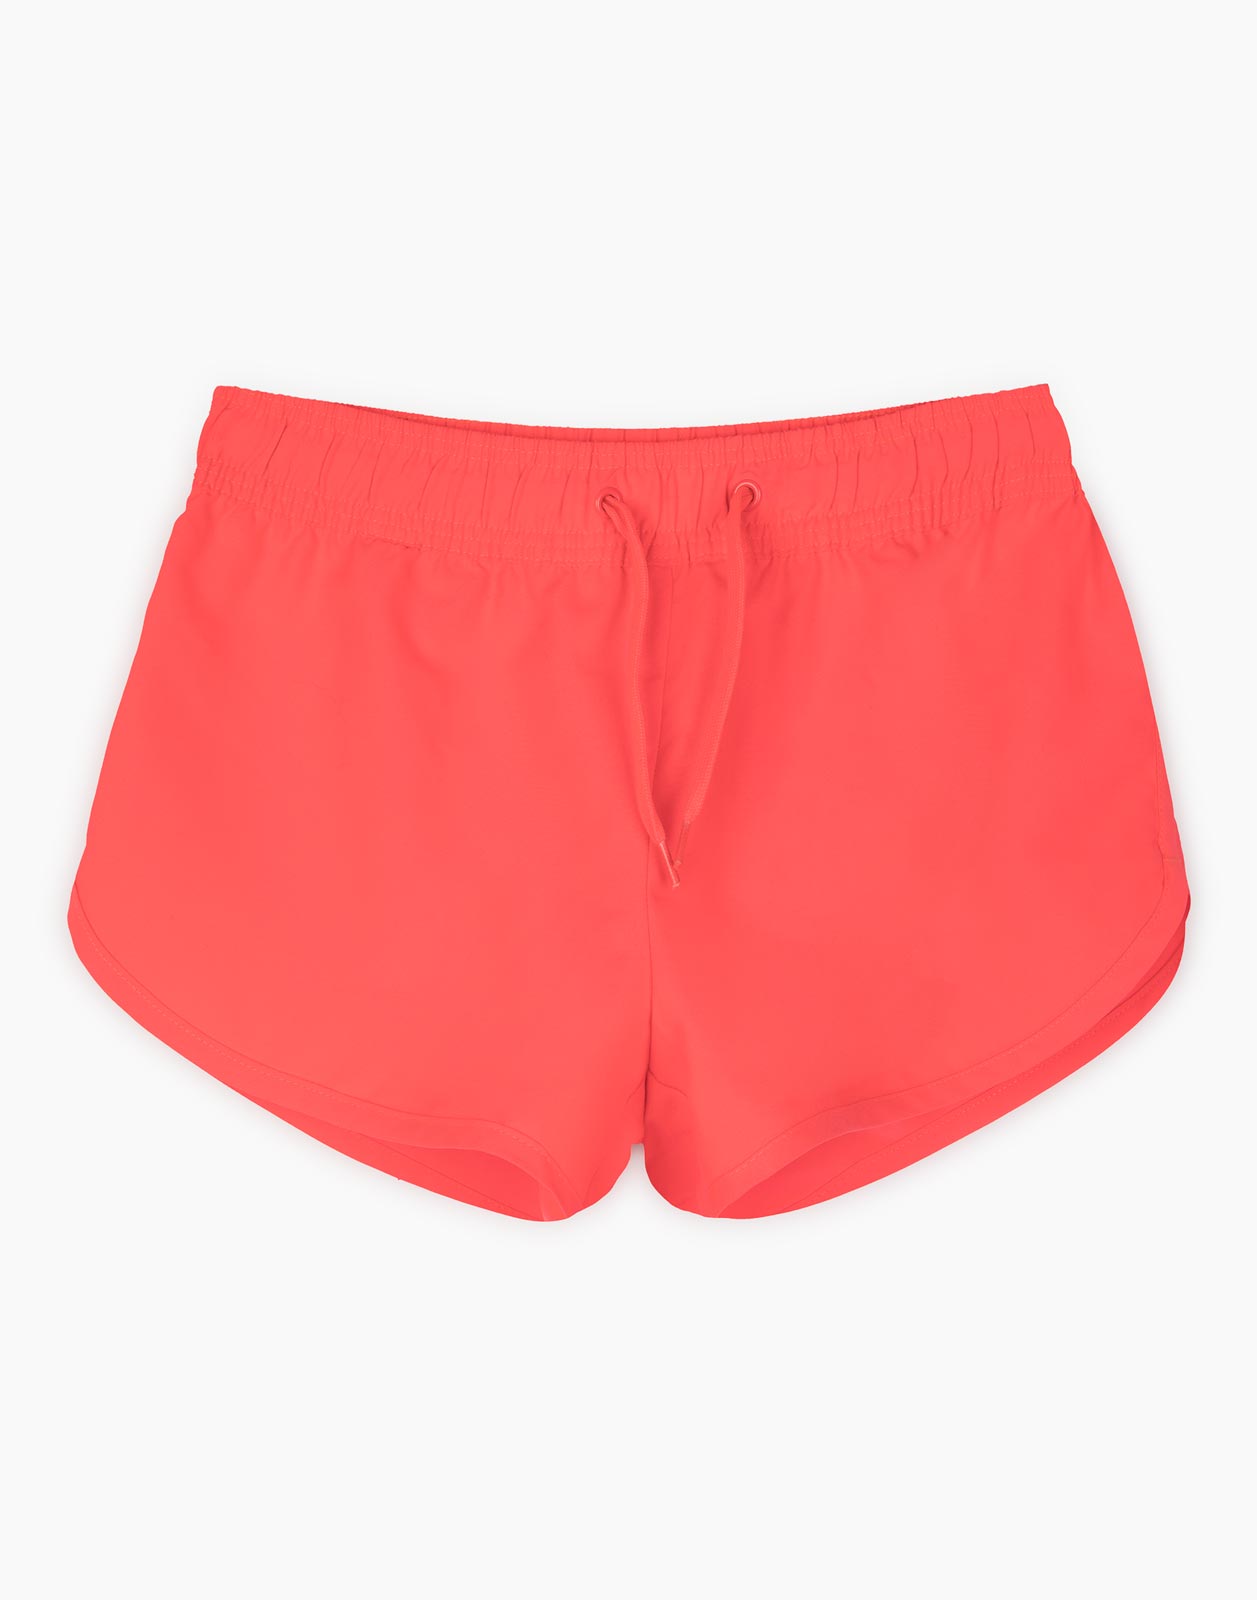 Коралловые пляжные шорты для девочки р.134-140